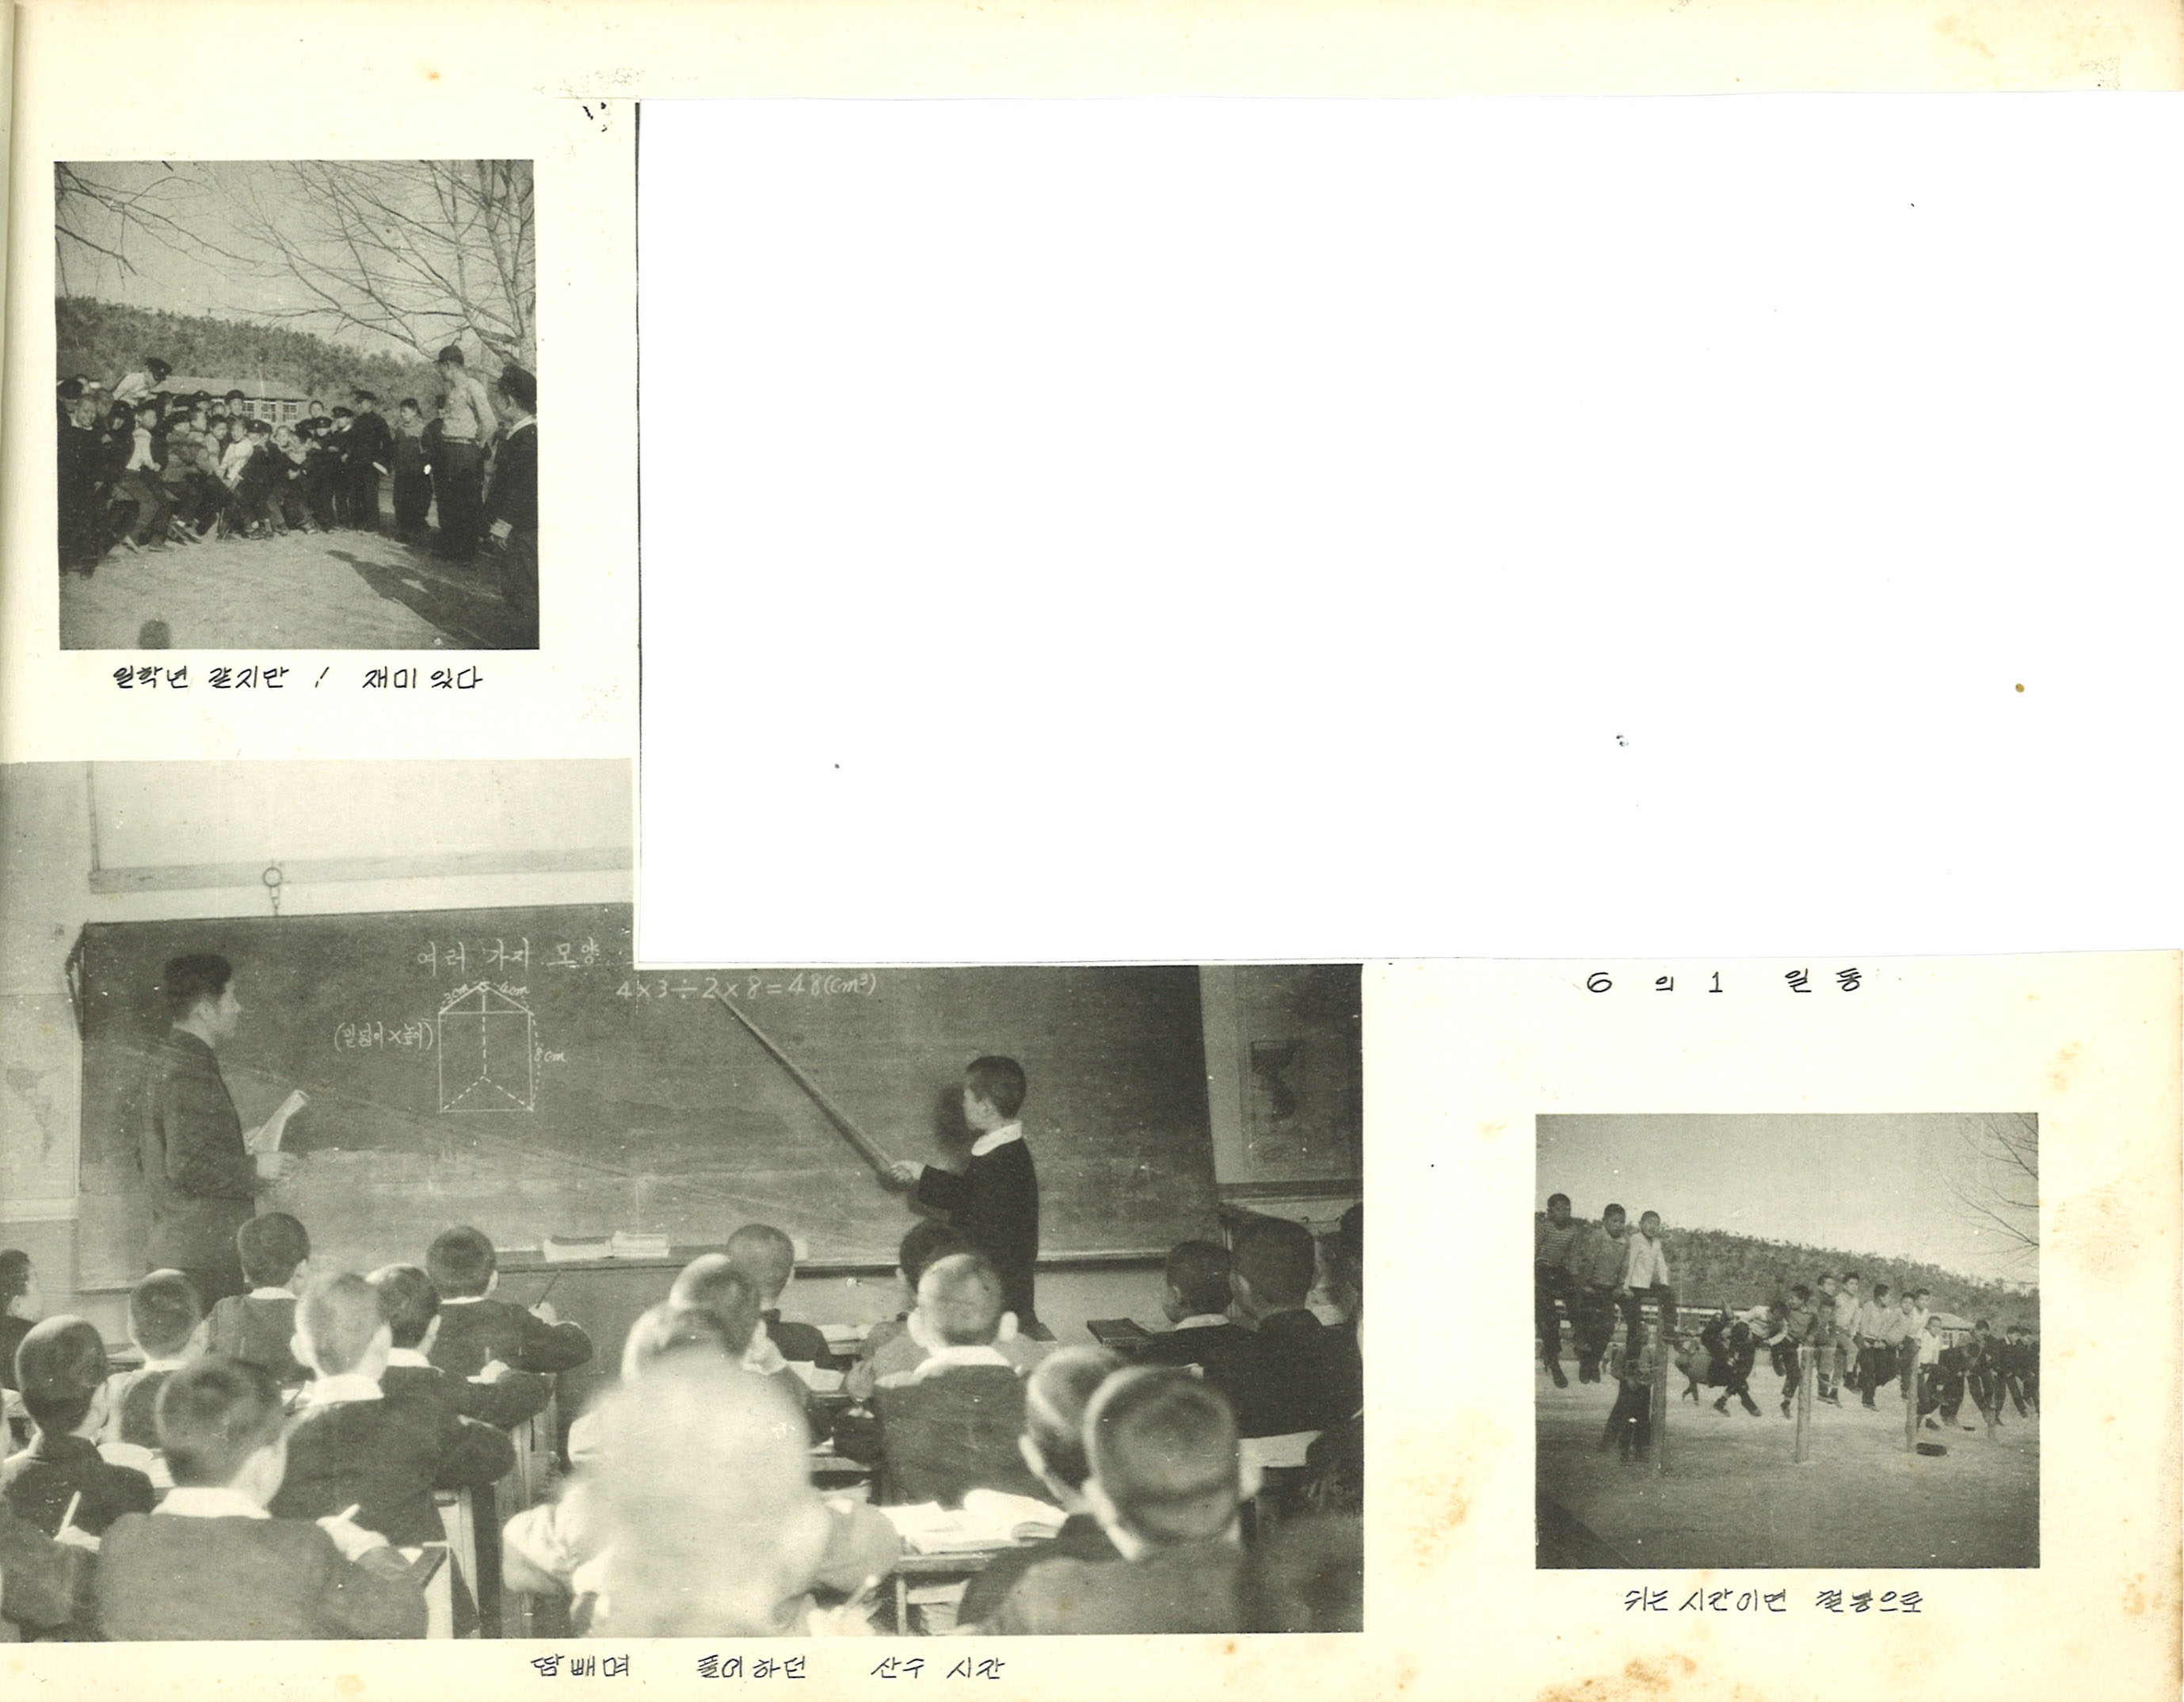 1964년(1963학년도) 제16회 졸업사진 6의 1 일동.jpg